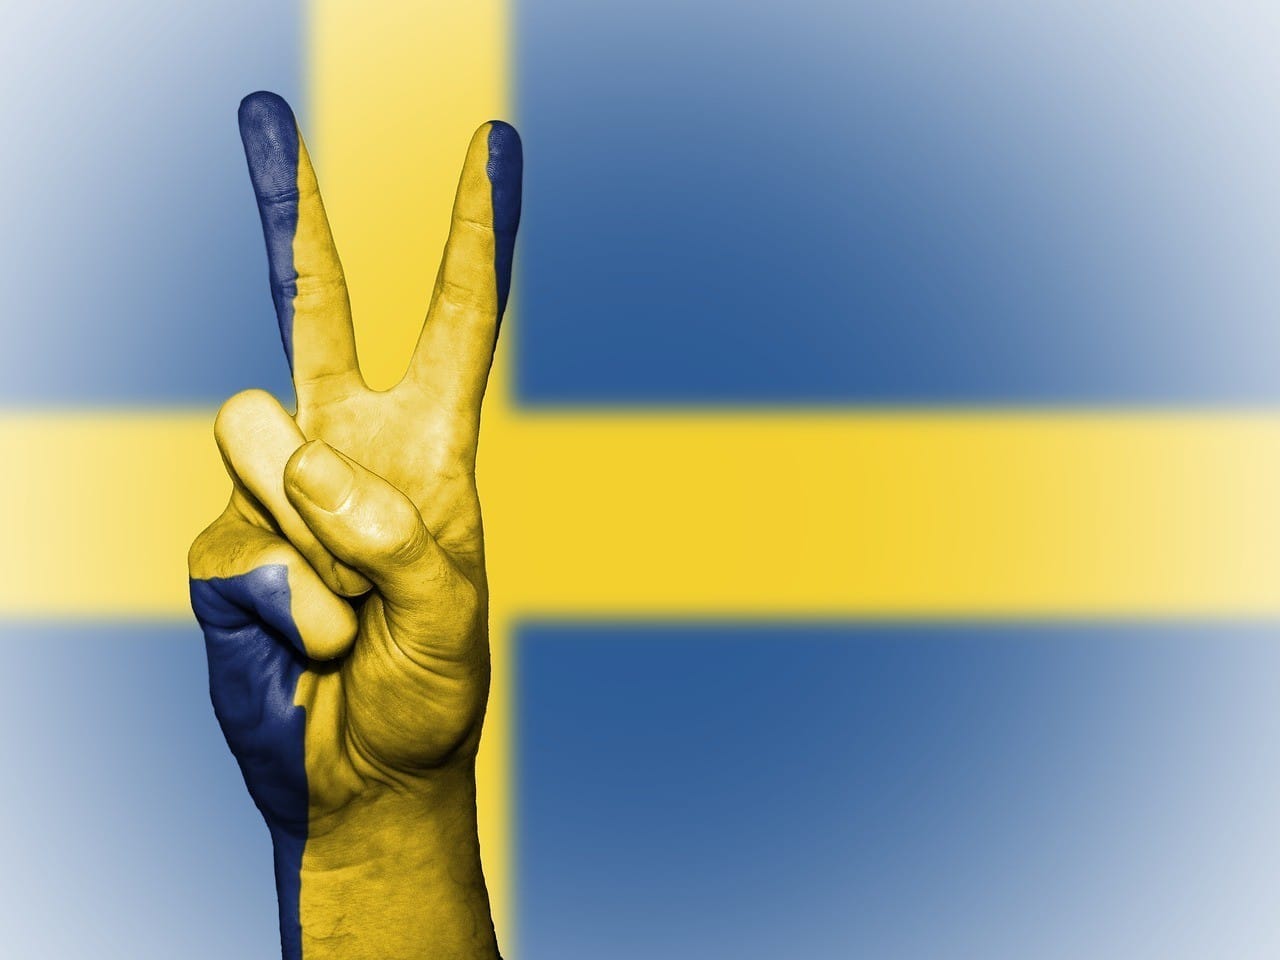 Zweedse internationale veiligheidsexpert: ‘Wij zijn bijna een failed state en op weg naar burgeroorlog door links immigratie beleid’